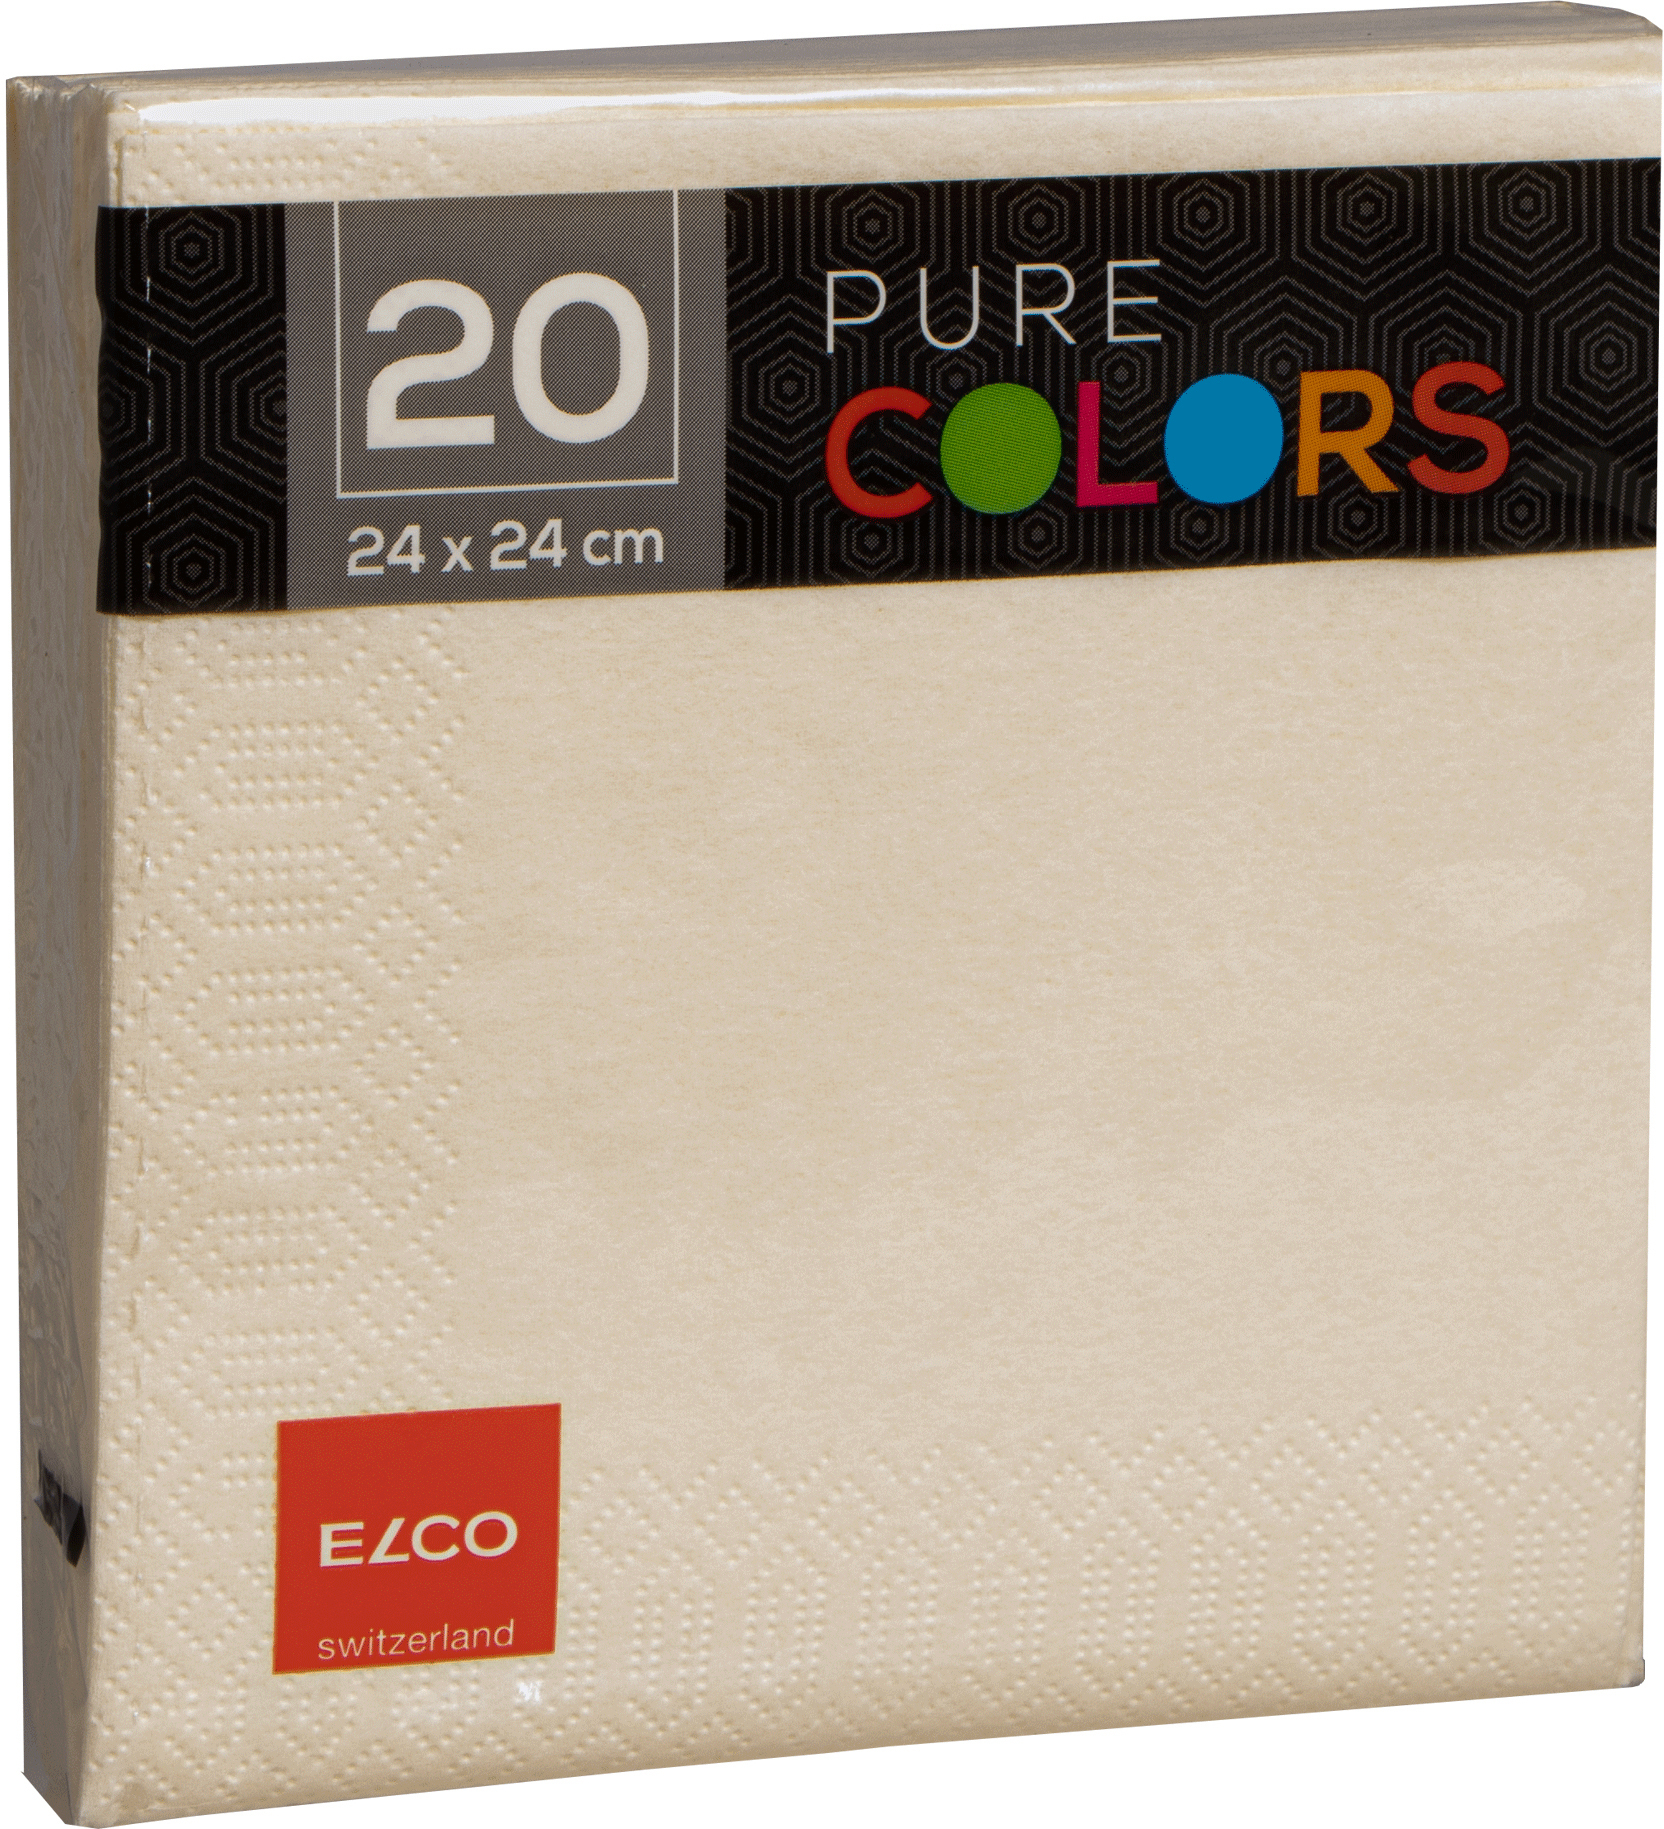 ELCO Serviettes tissue 24x24cm PC234020-004 3 plis, crème 20pcs.